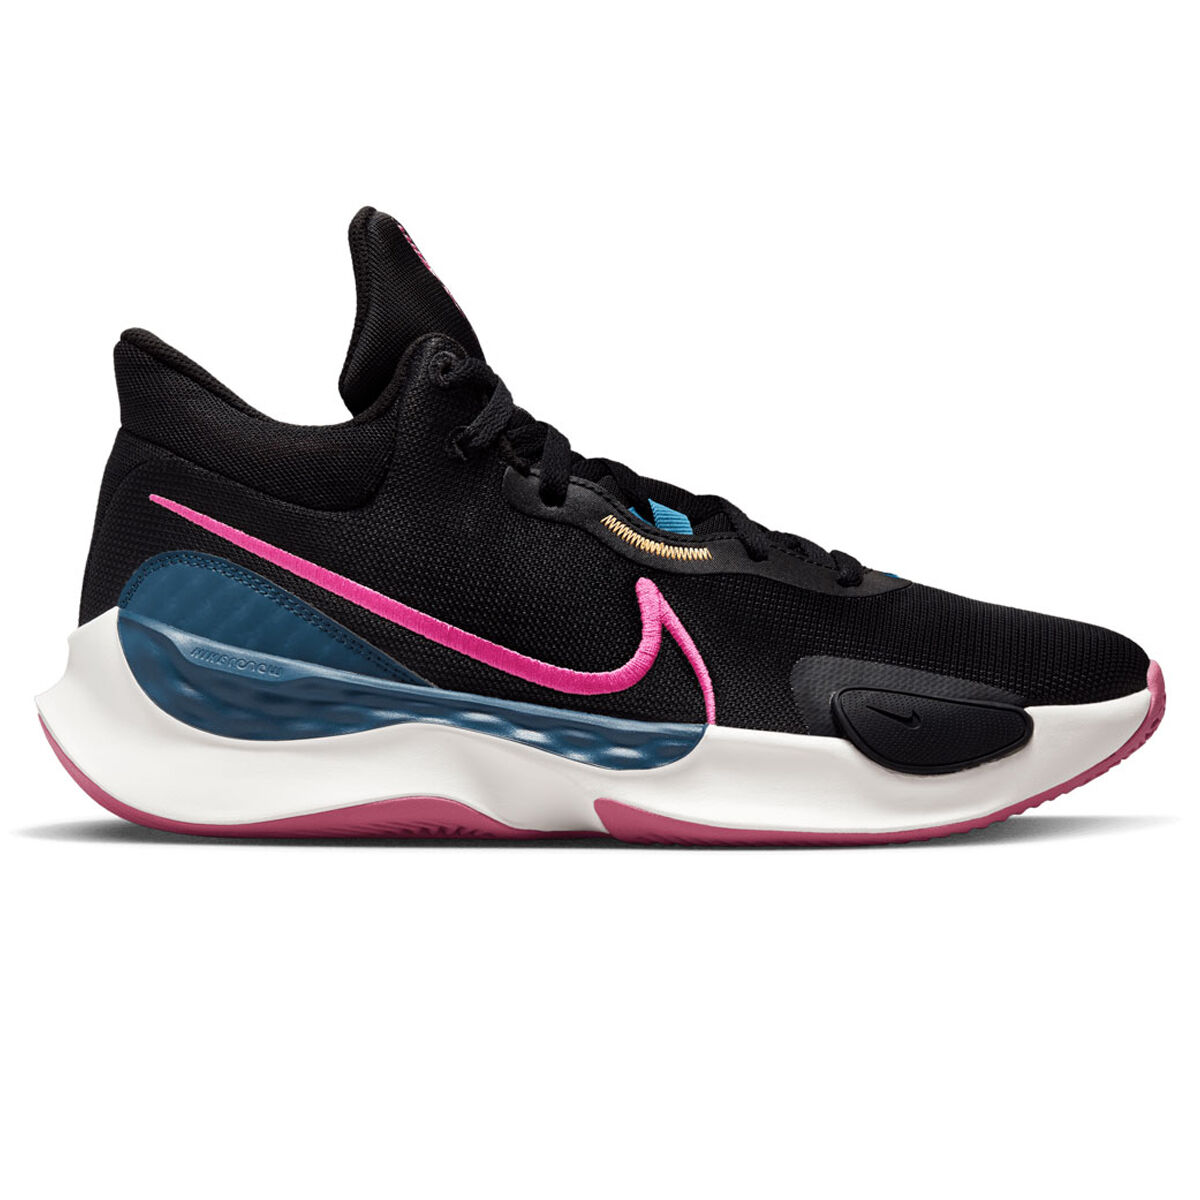 JD Sports Sport & Swimwear Sportswear Sports Shoes Basketball Renew Elevate 3 Basketball Shoes 